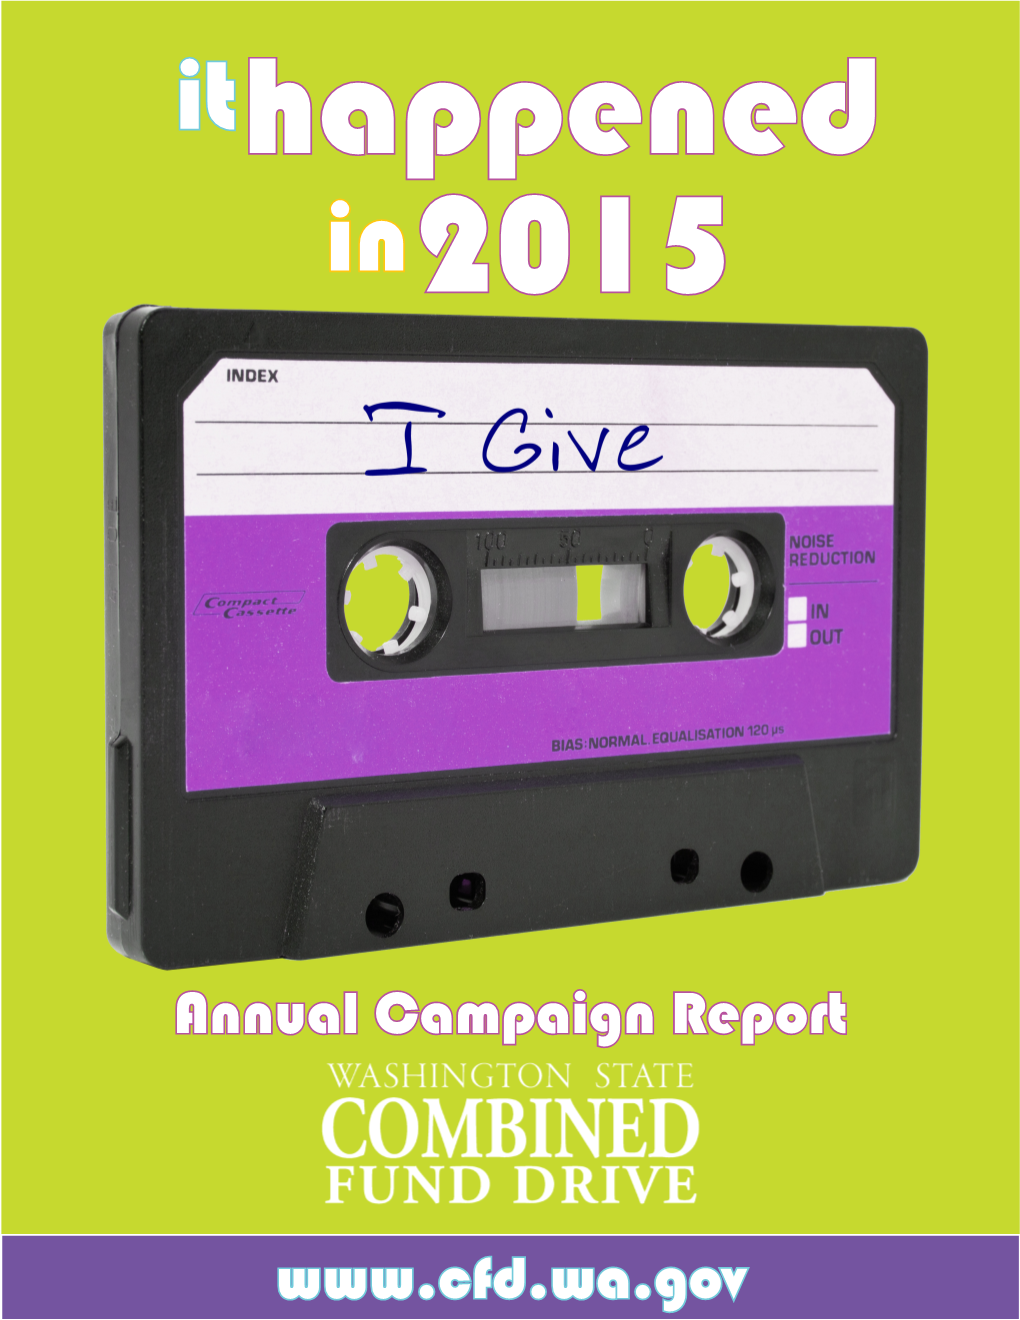 Annual Campaign Report